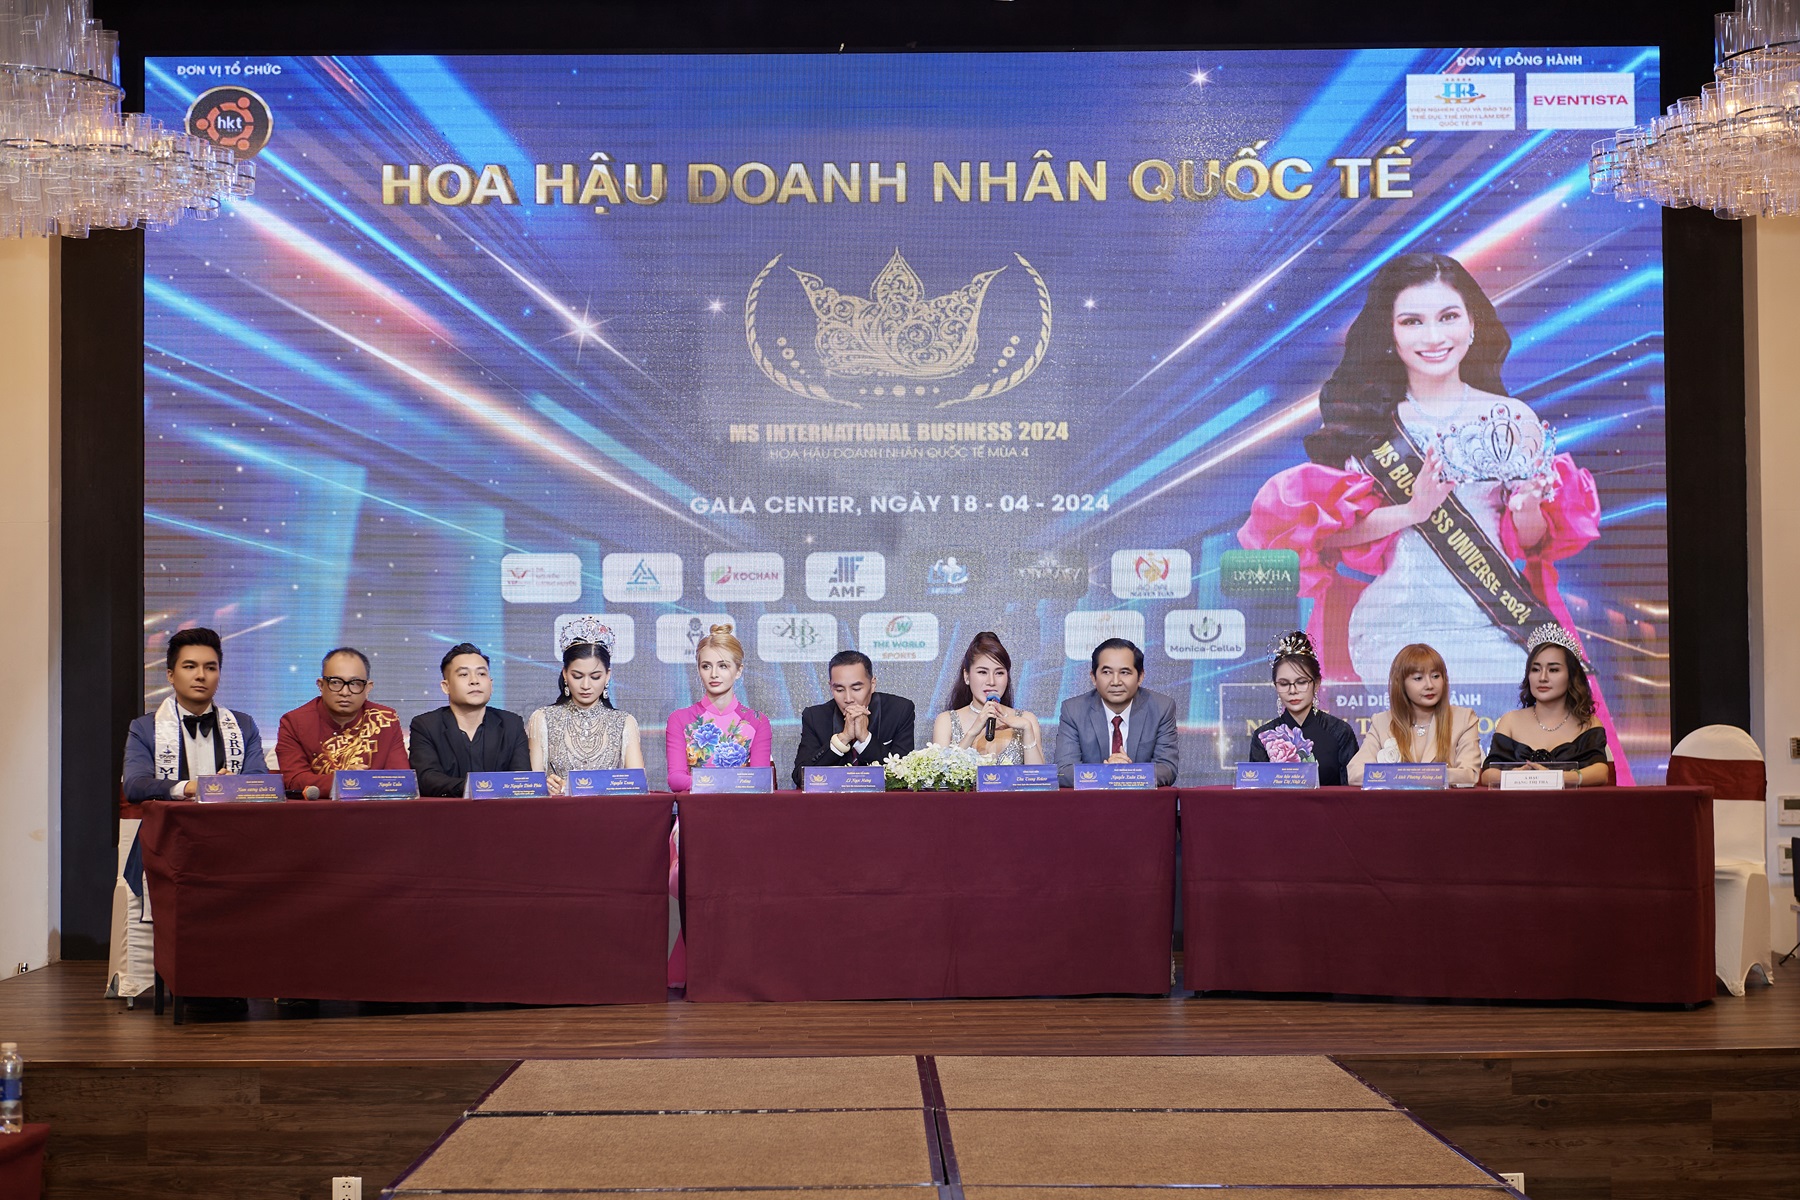 Hoa hậu Nga 2017 gây ấn tượng khi mặc áo dài truyền thống, lựa chọn Hoa hậu Doanh nhân quốc tế - ảnh 1